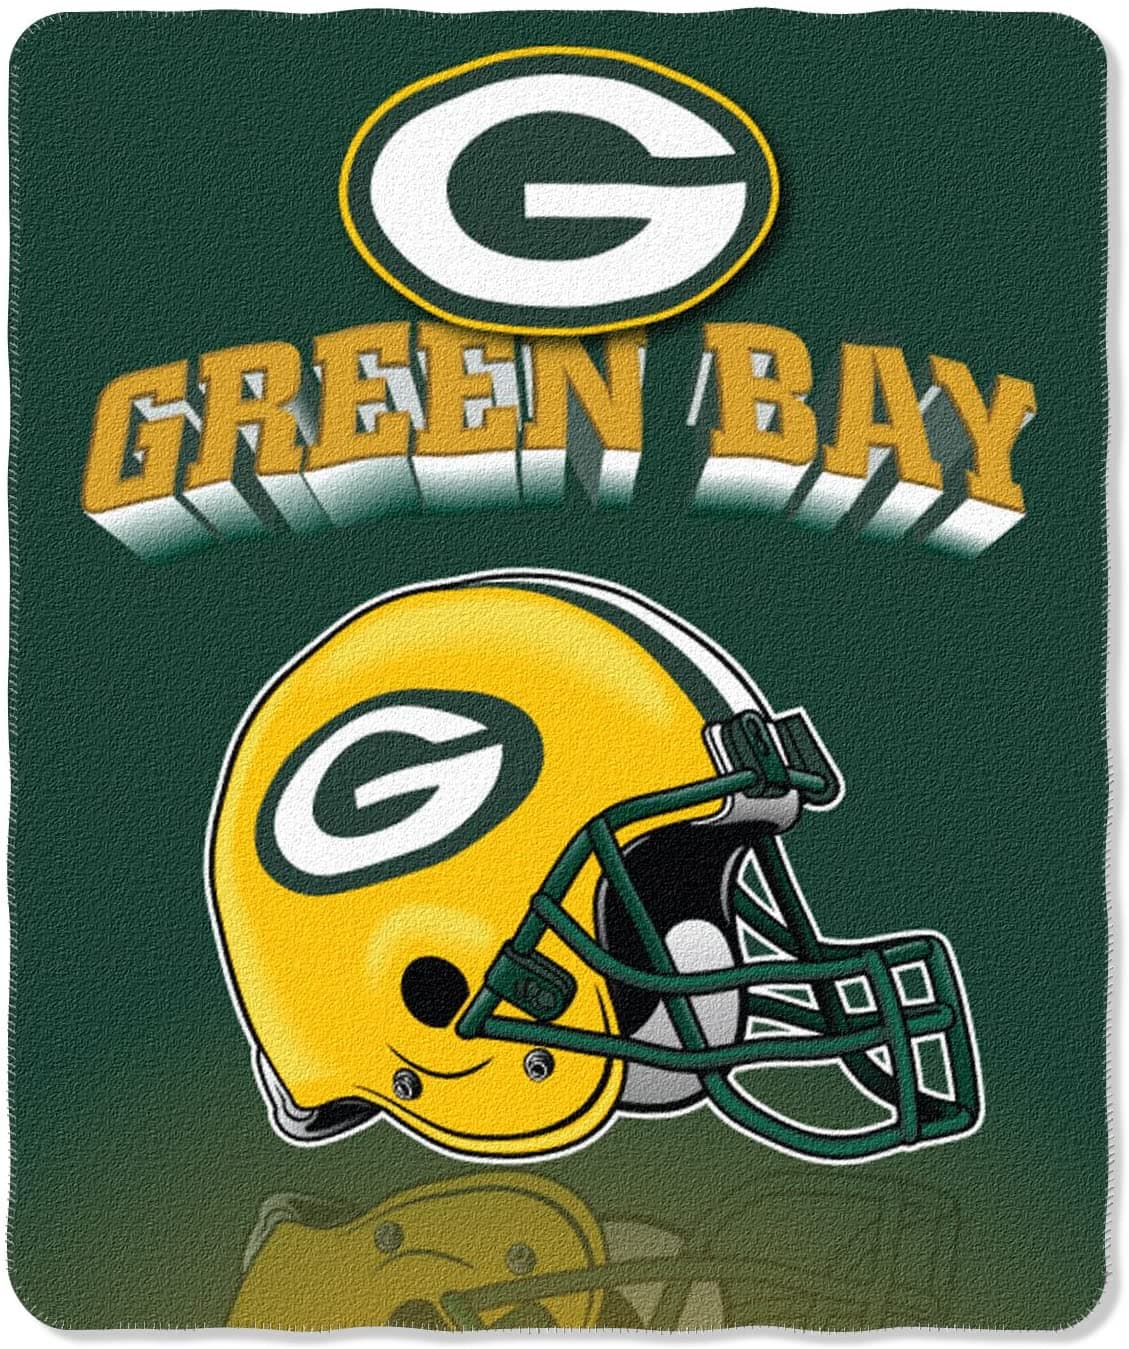 Nfl  Throw Green_Bay_Packers Fleece Blanket